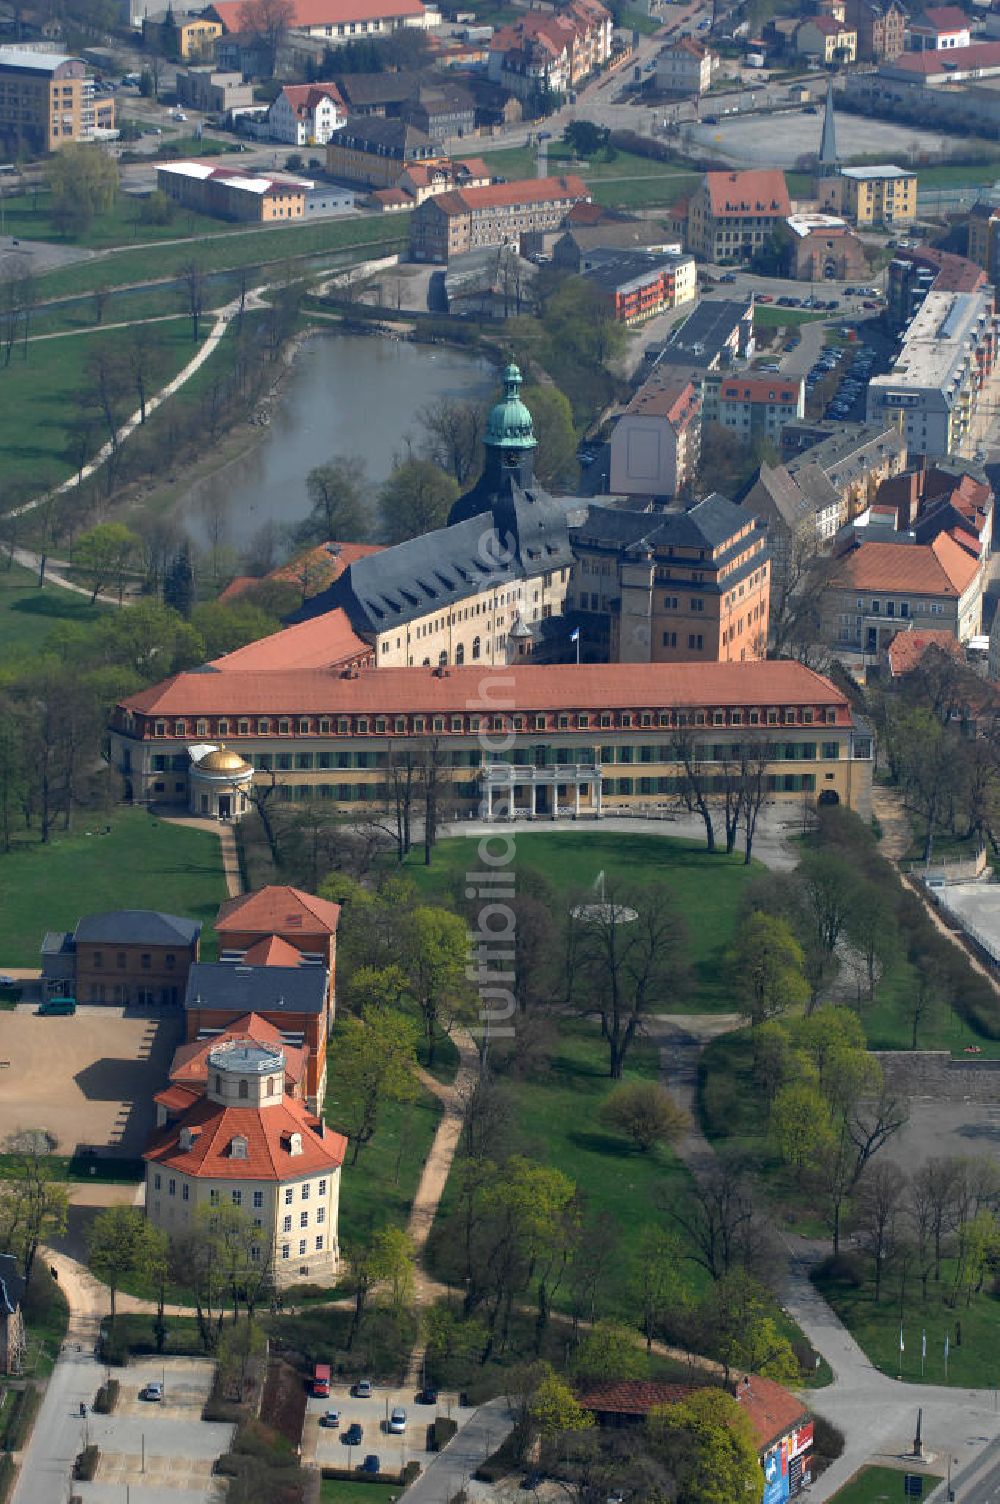 Luftaufnahme Sonderhausen - Das Schloss Sondershausen mit dem Schlossmuseum und dem Achteckhaus